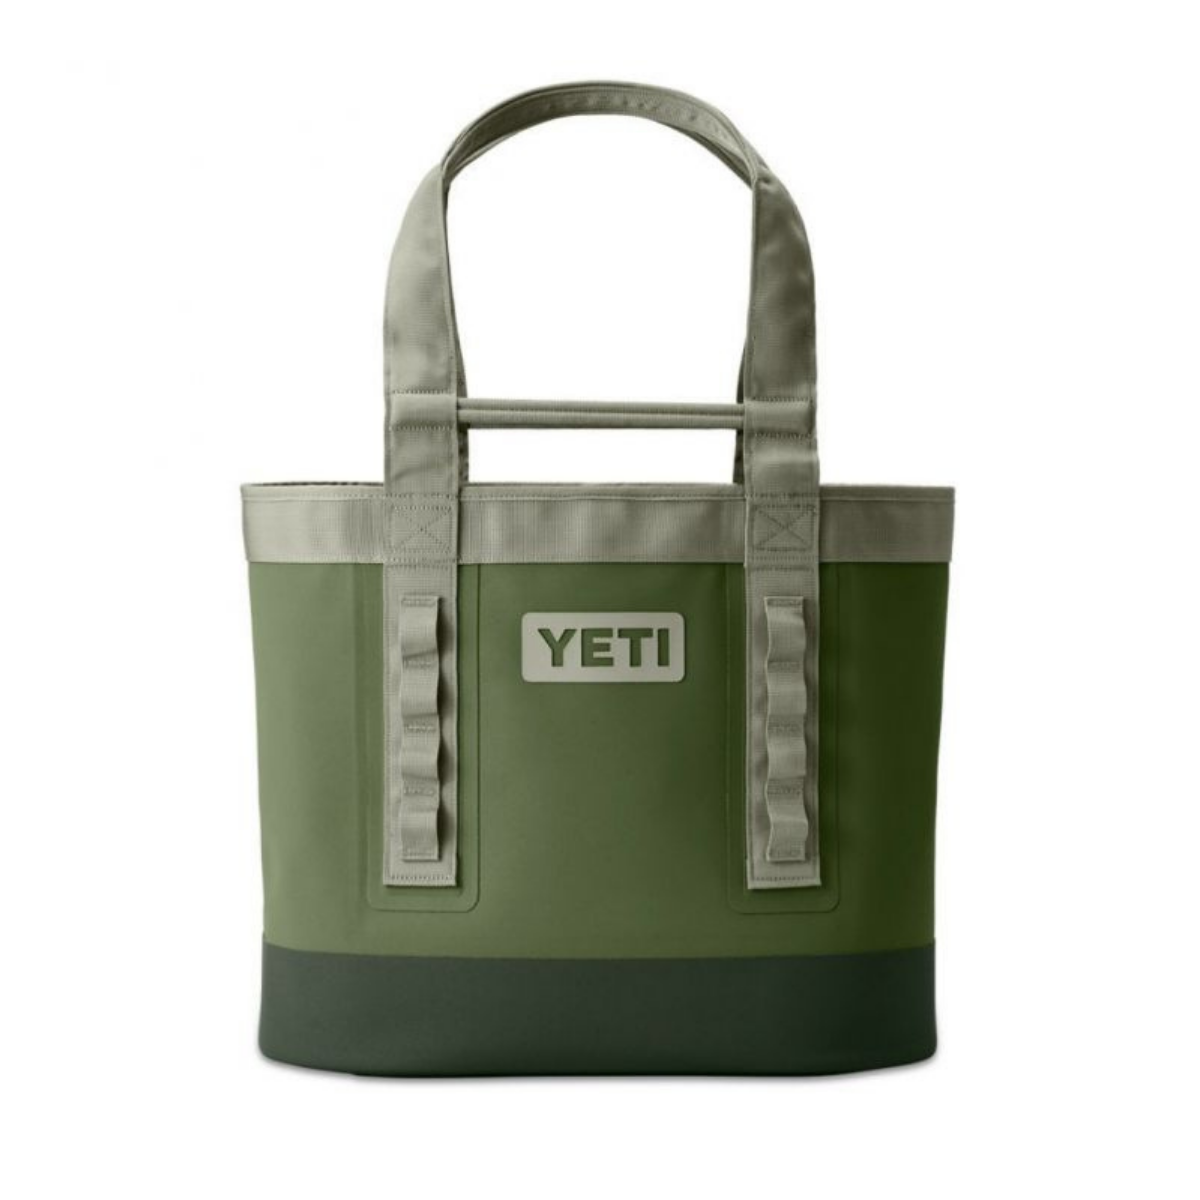 Yeti Camino Carryall 35 2.0 - Travel bag